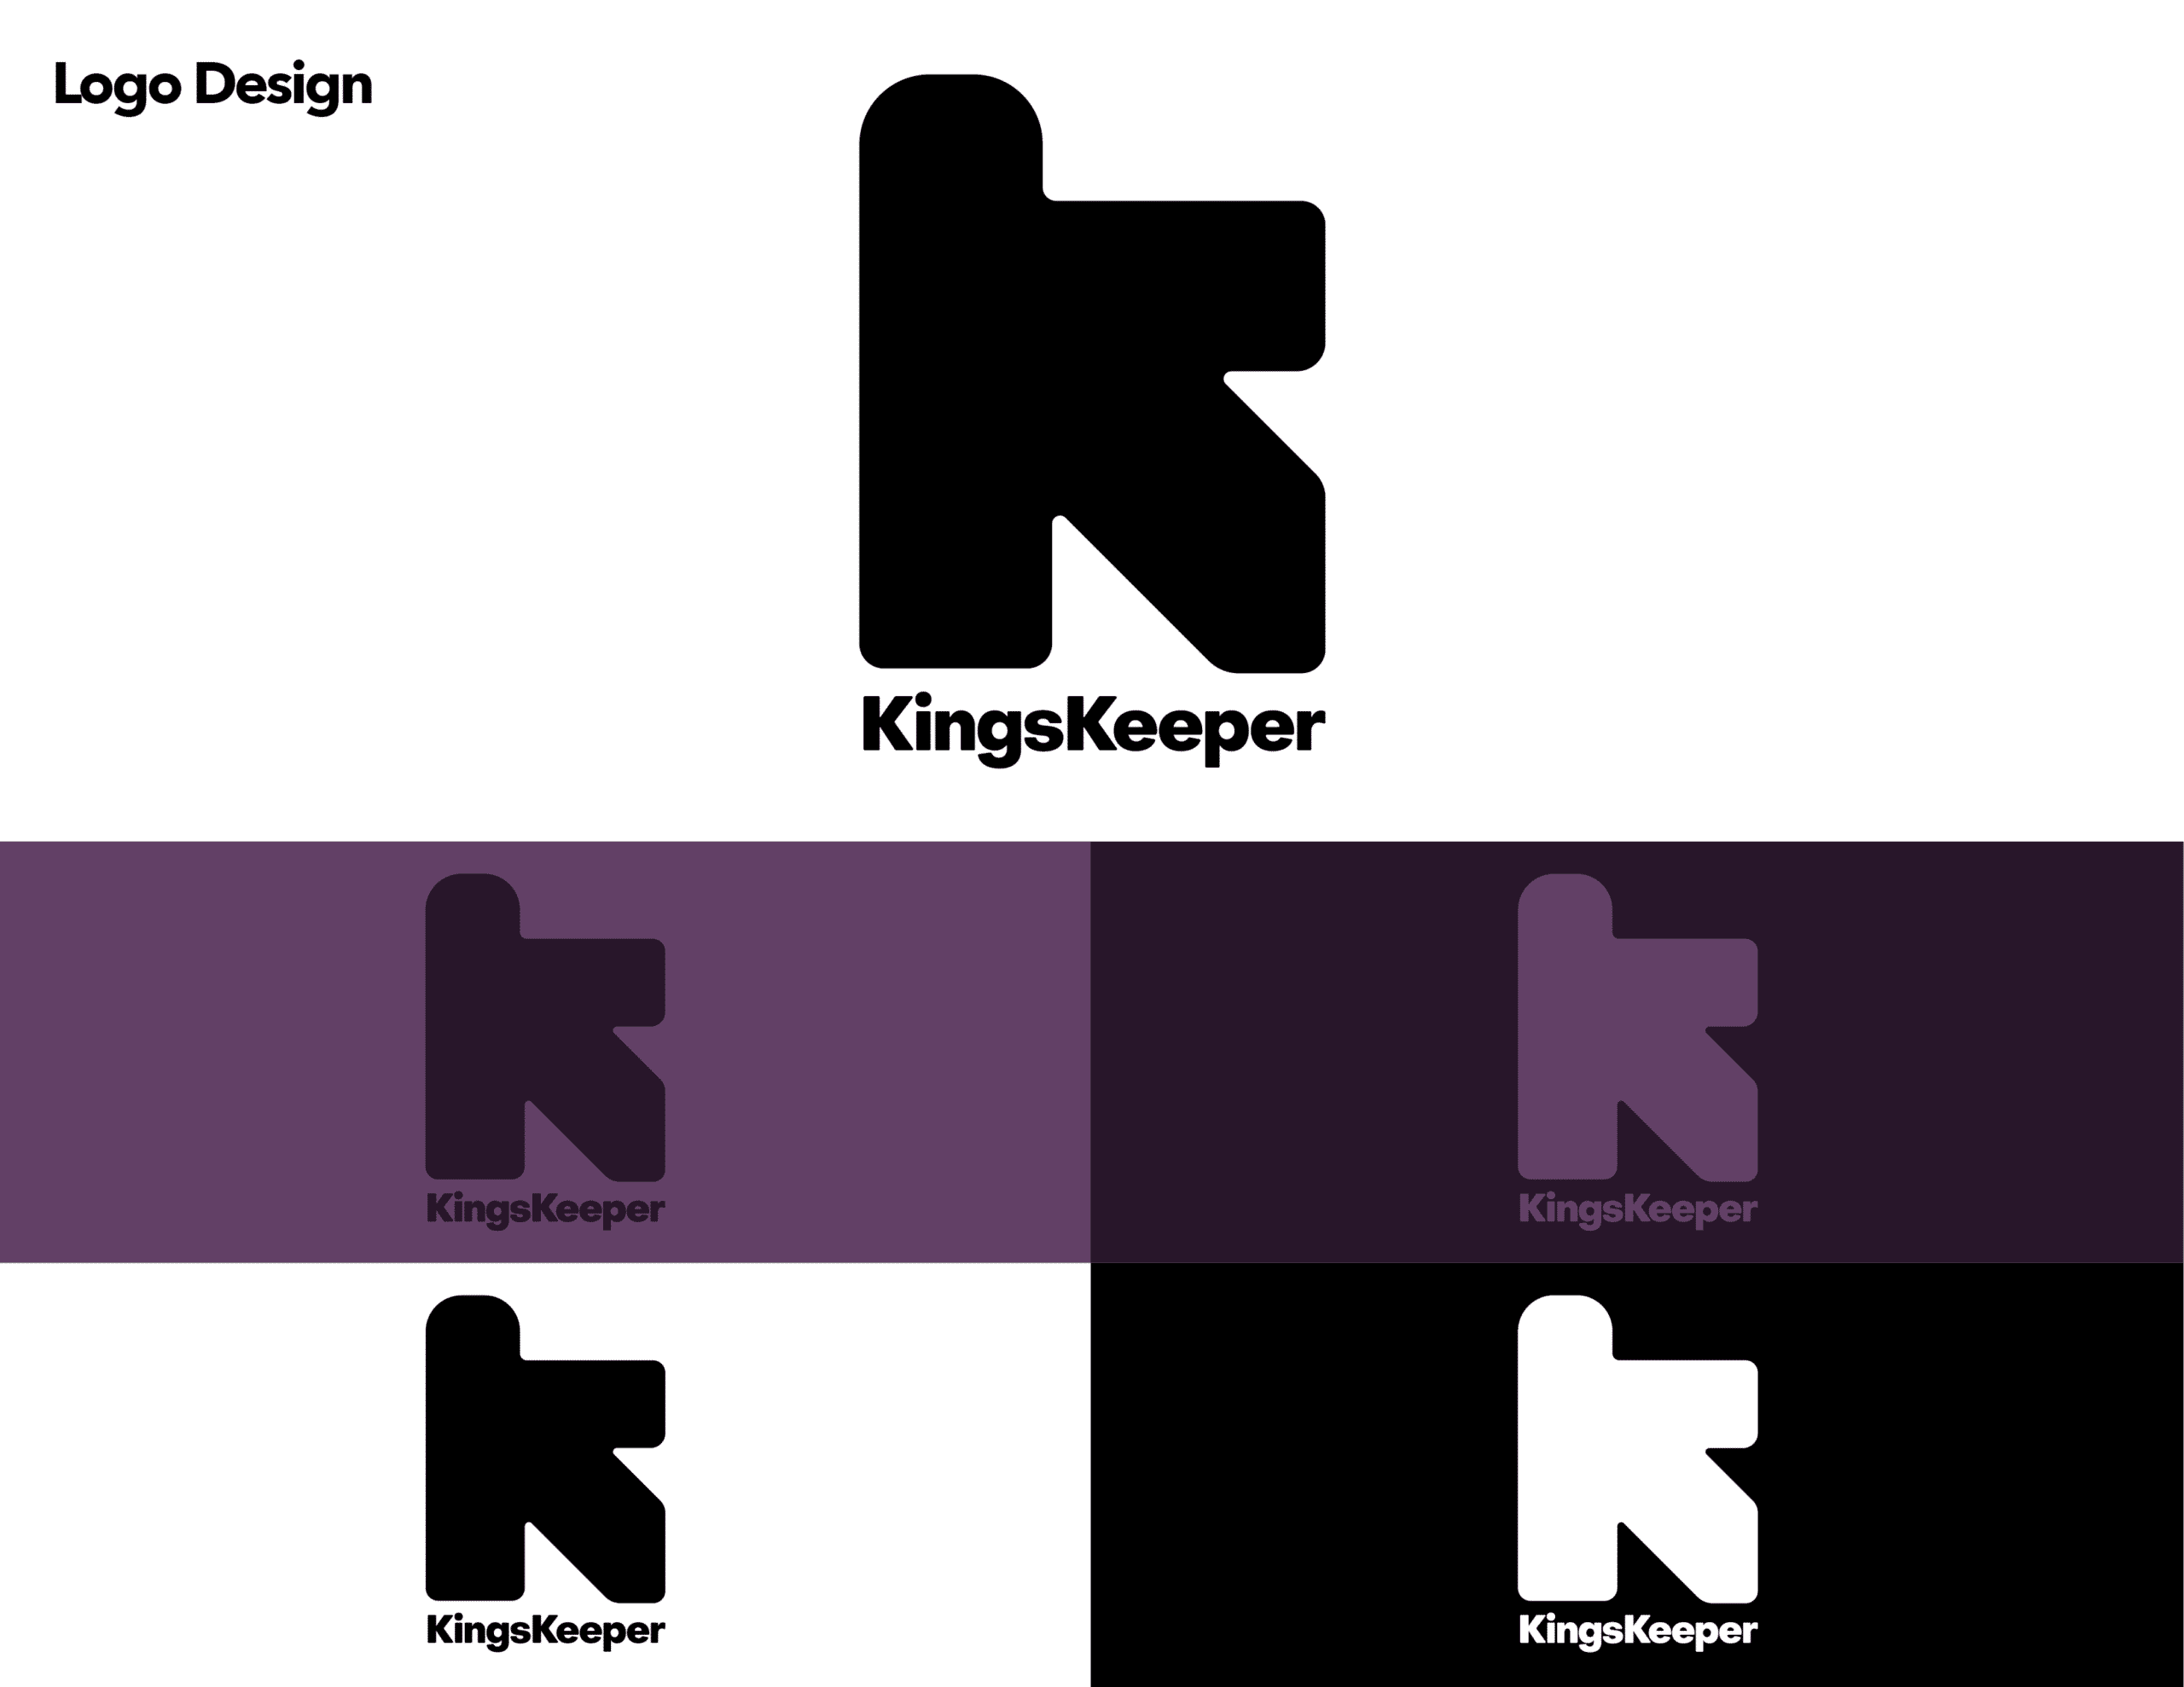 01 - KINGSKEEPER_LOGO_DESIGN